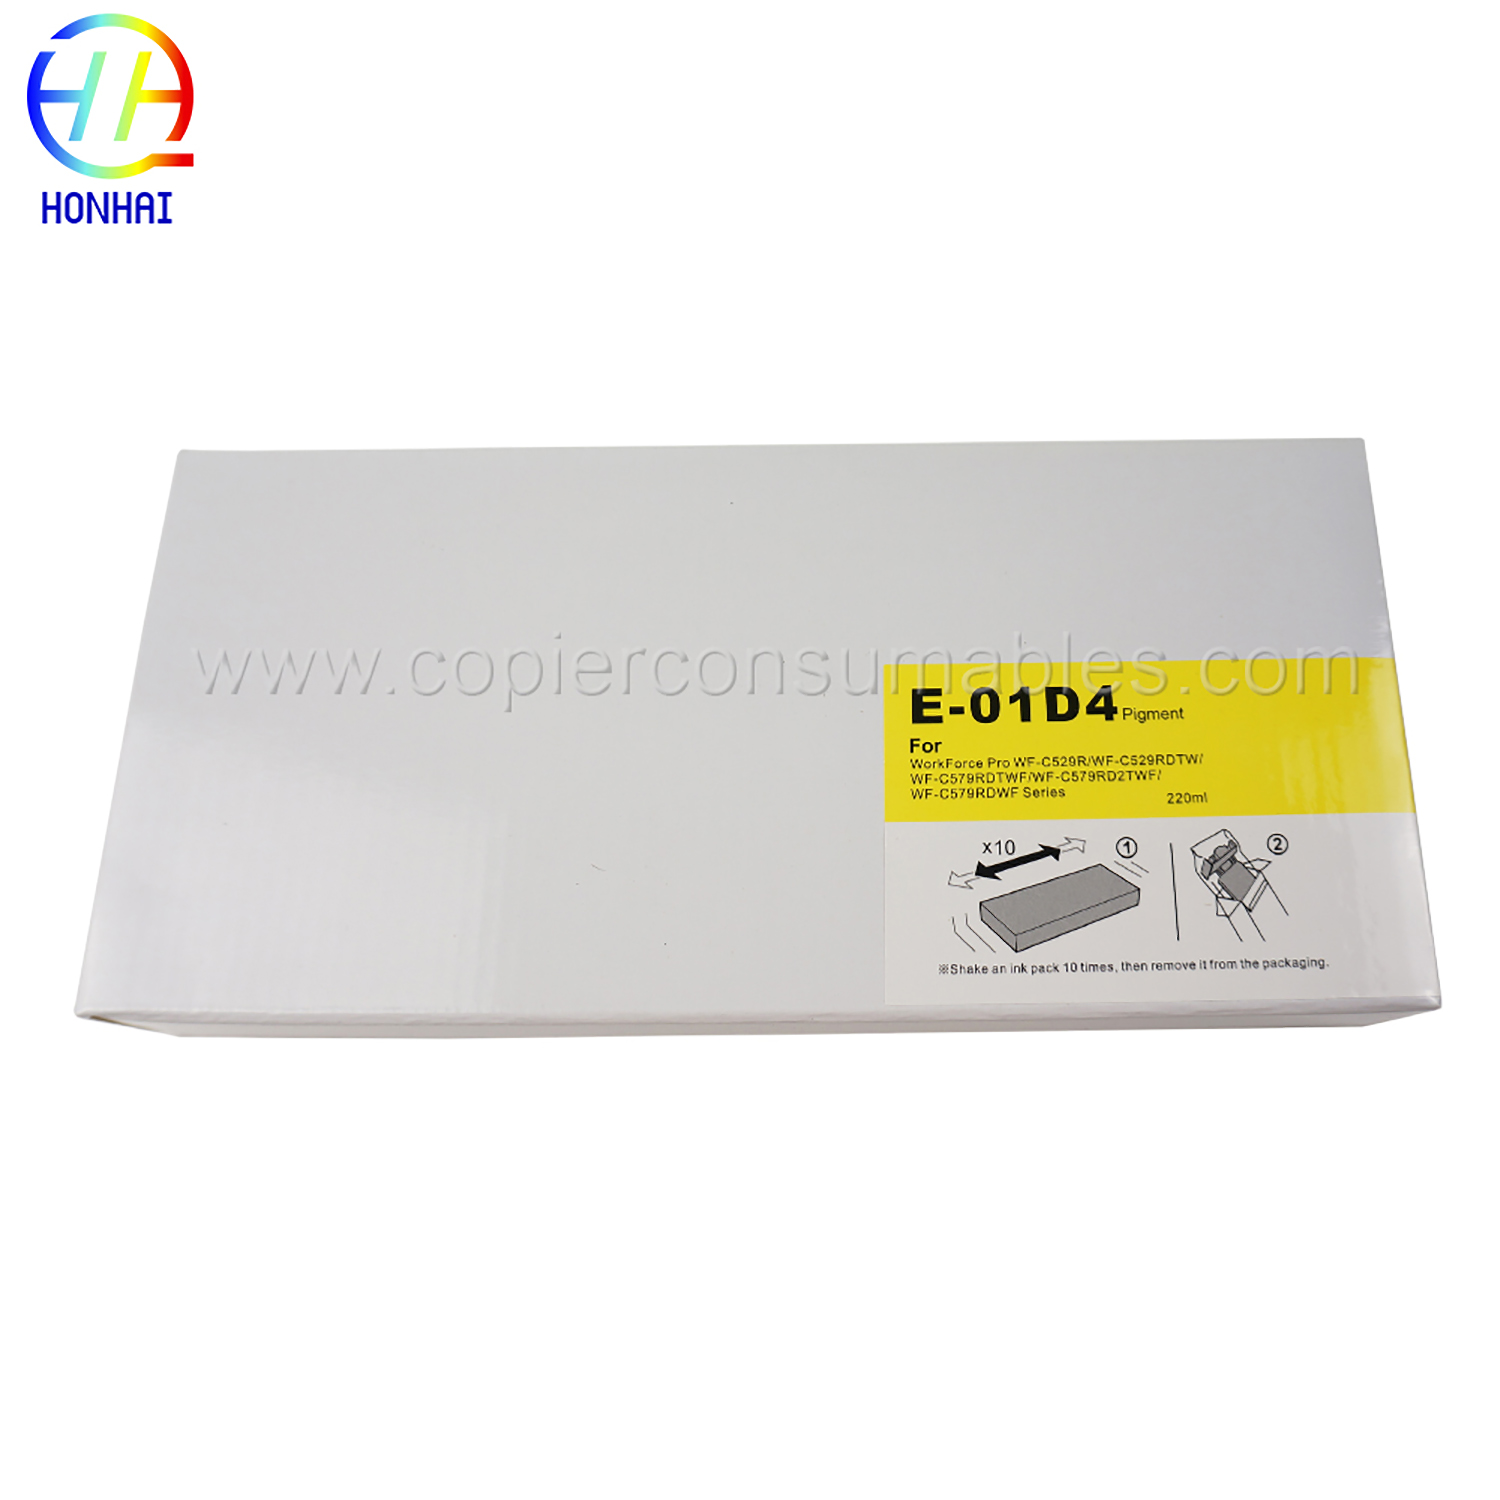 Bolsa de tinta para Epson WorkForce Pro WF-C529RWF-C529RDTWWF-C579RDTWFWF-C579RD2TWFWF-C579RDWF Series T01D4 (Y) 220 ml (5) 拷贝